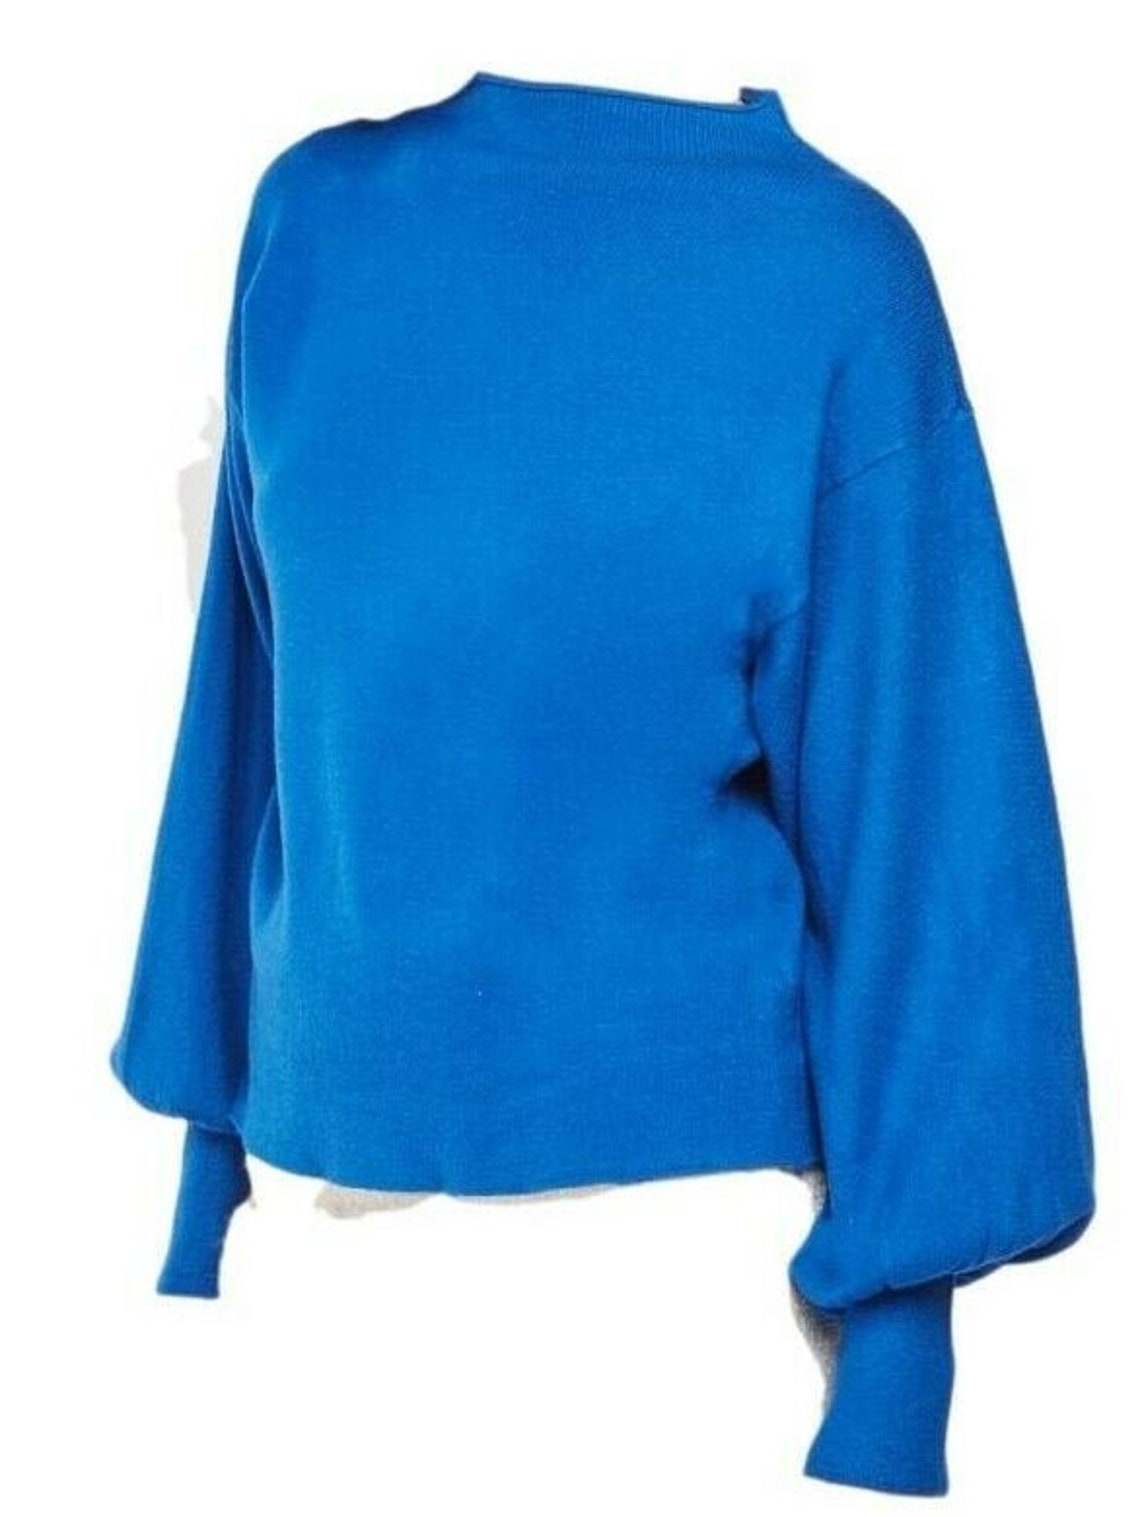 Plus Size 30/32 Jumper Cobalt Blue Soft Knit Long Sleeved | Etsy